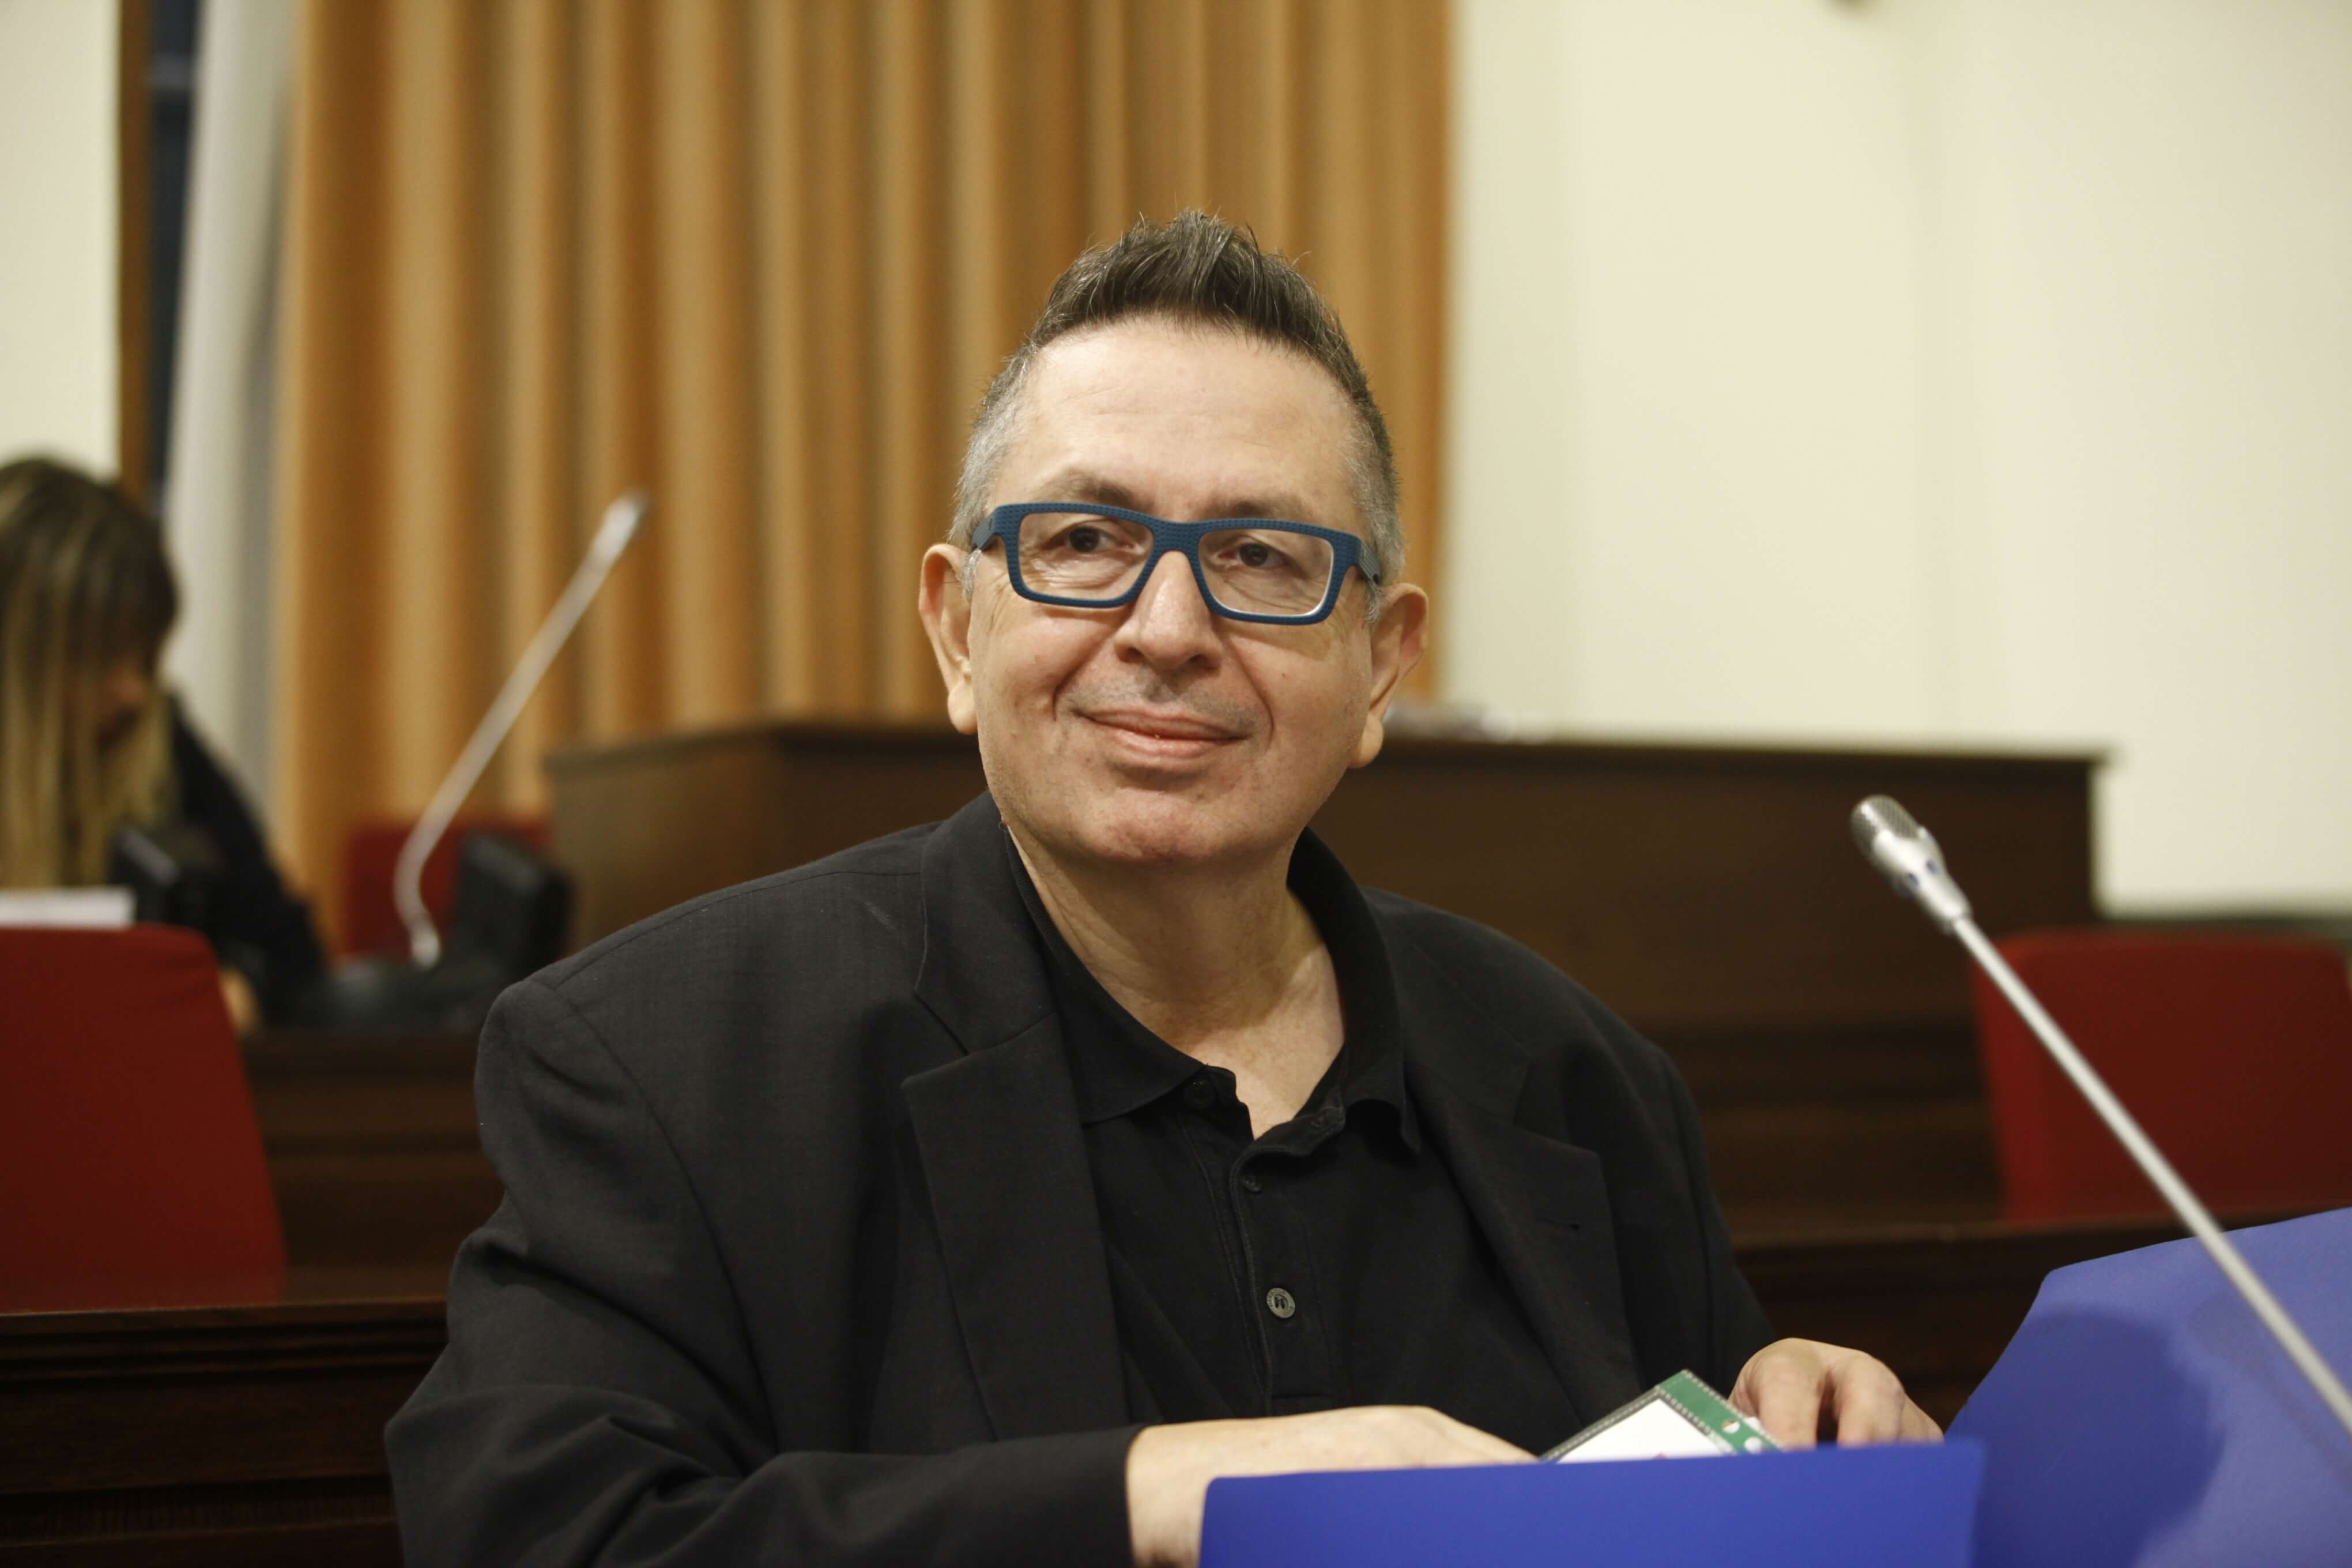 ΝΔ: Ο Θέμος Αναστασιάδης άφησε το δικό του διακριτό στίγμα στην δημοσιογραφία